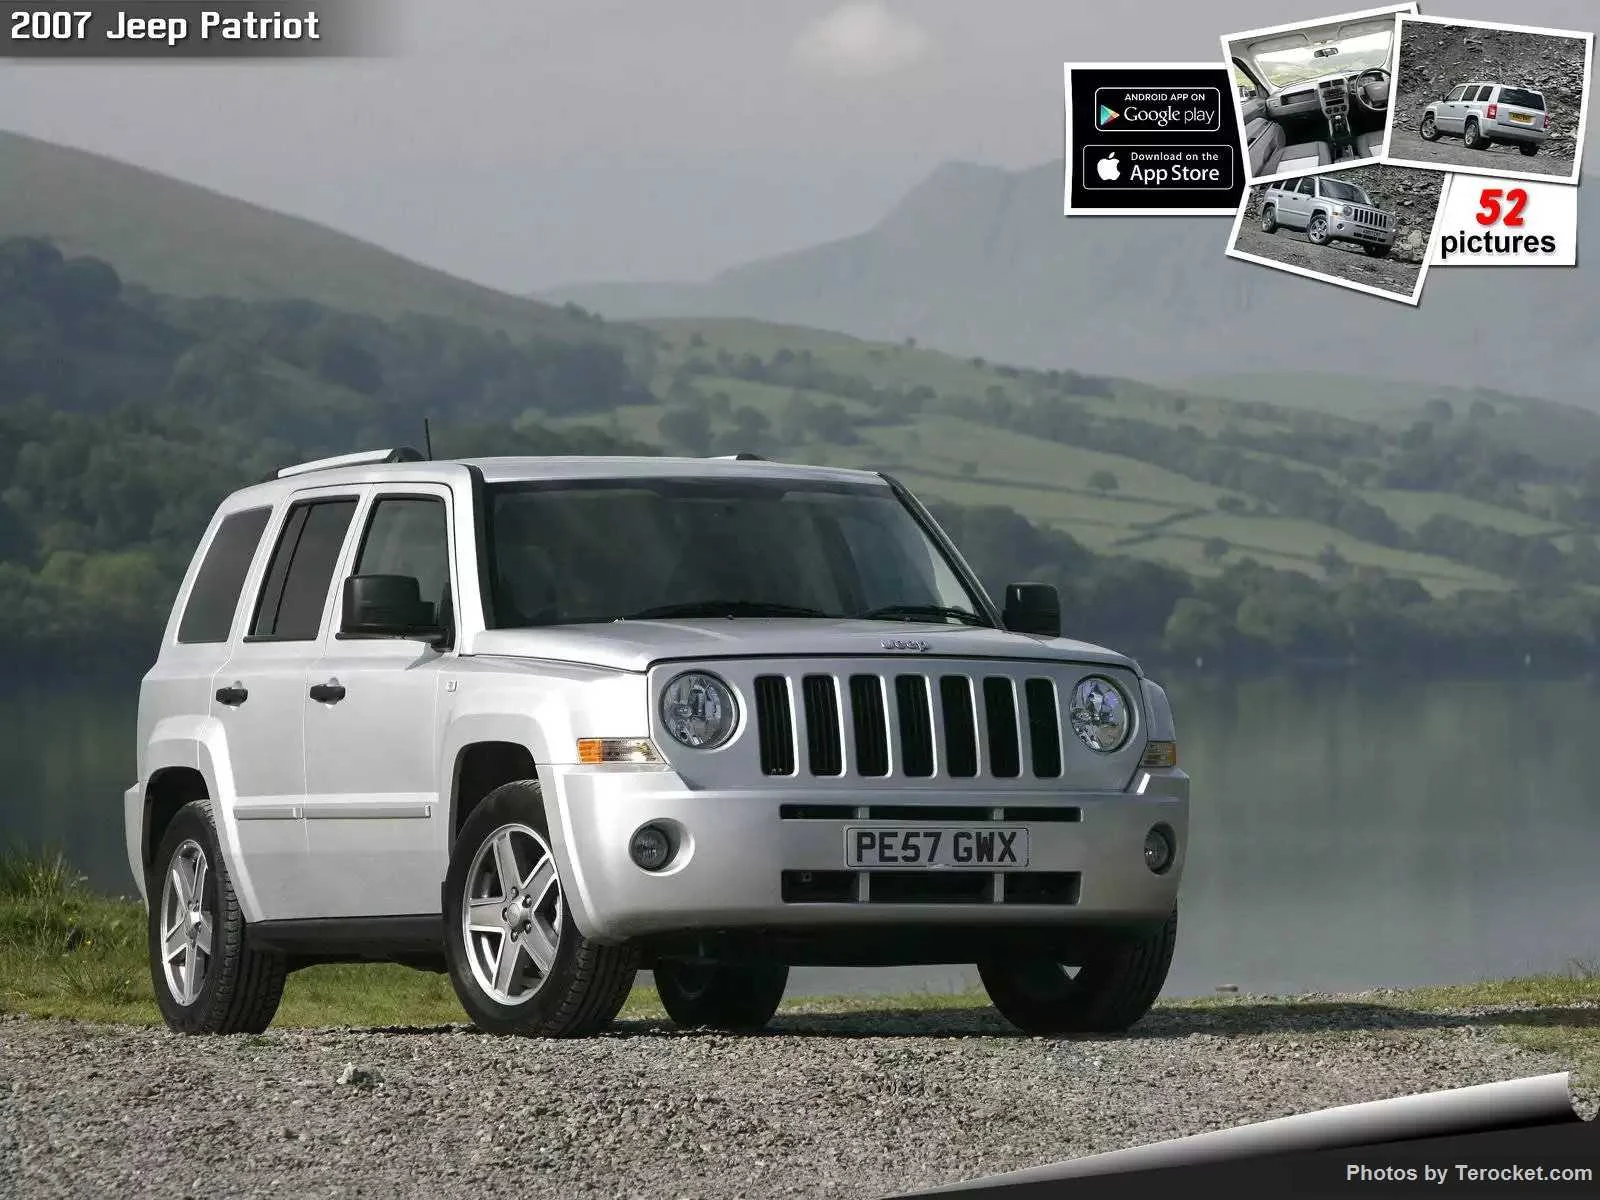 Hình ảnh xe ô tô Jeep Patriot UK Version 2007 & nội ngoại thất